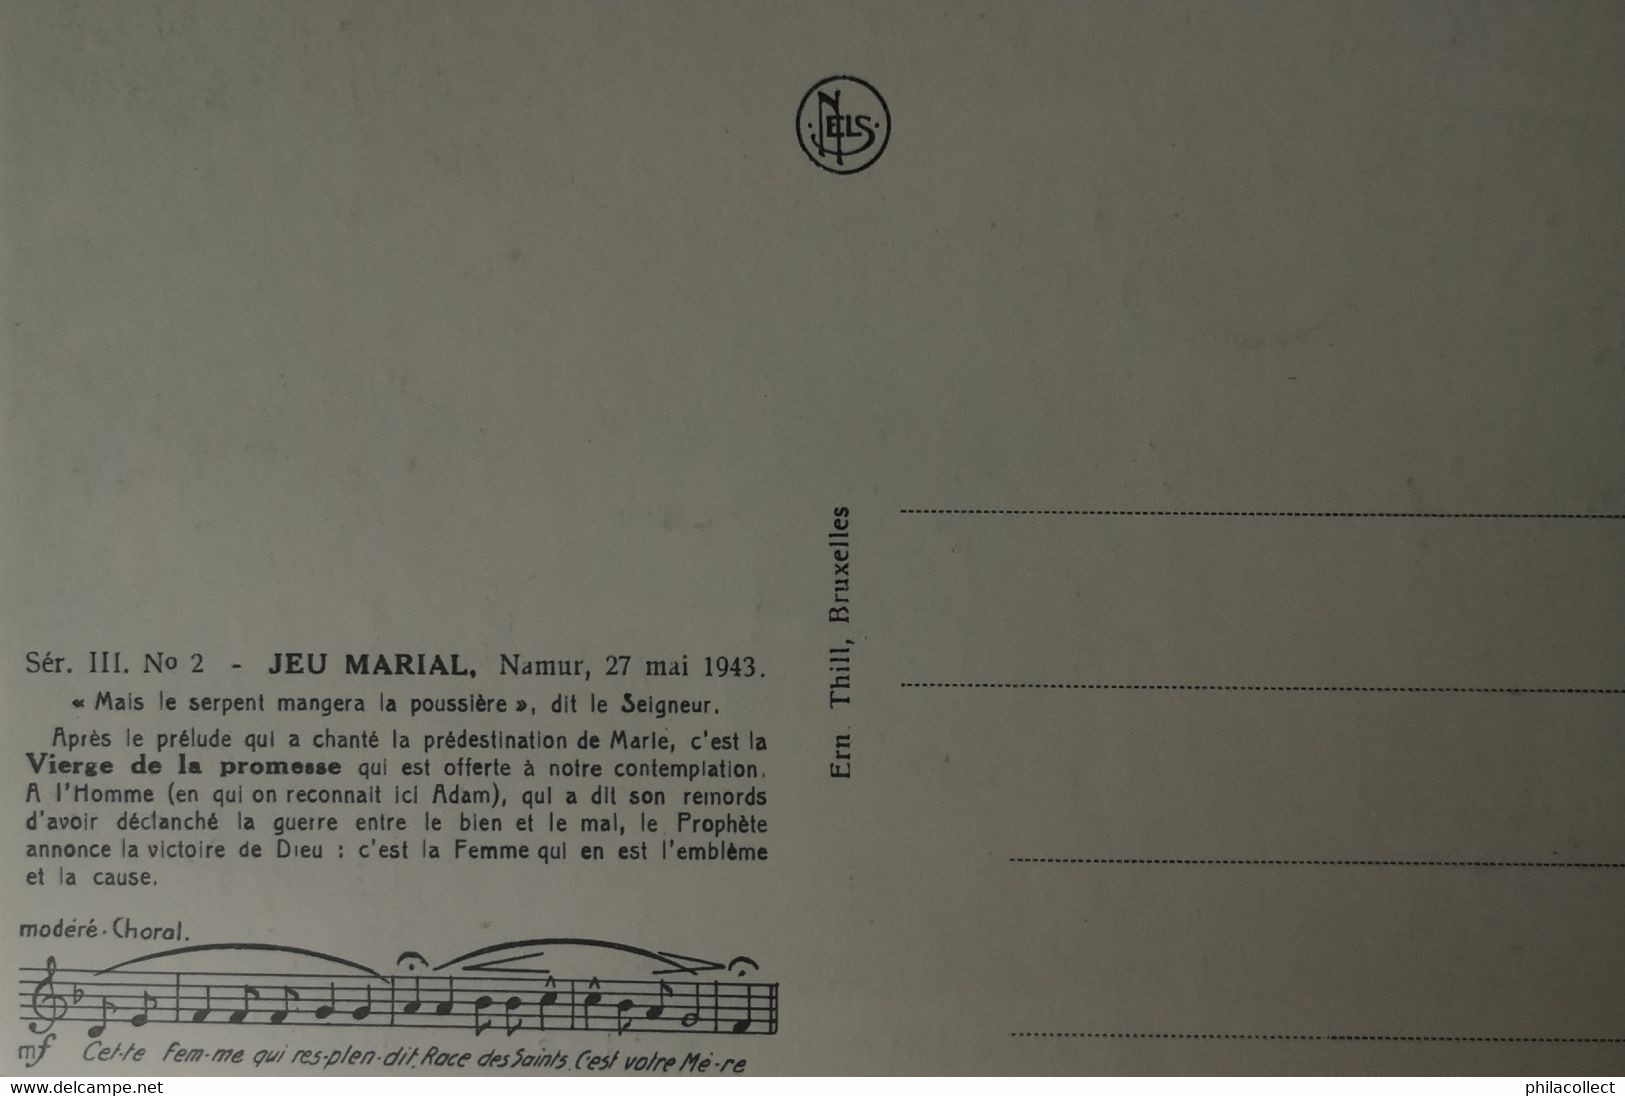 Namur // Jeu Marial Namur 27 Mai 1943 // Ser. III No.2 // 19?? - Namur